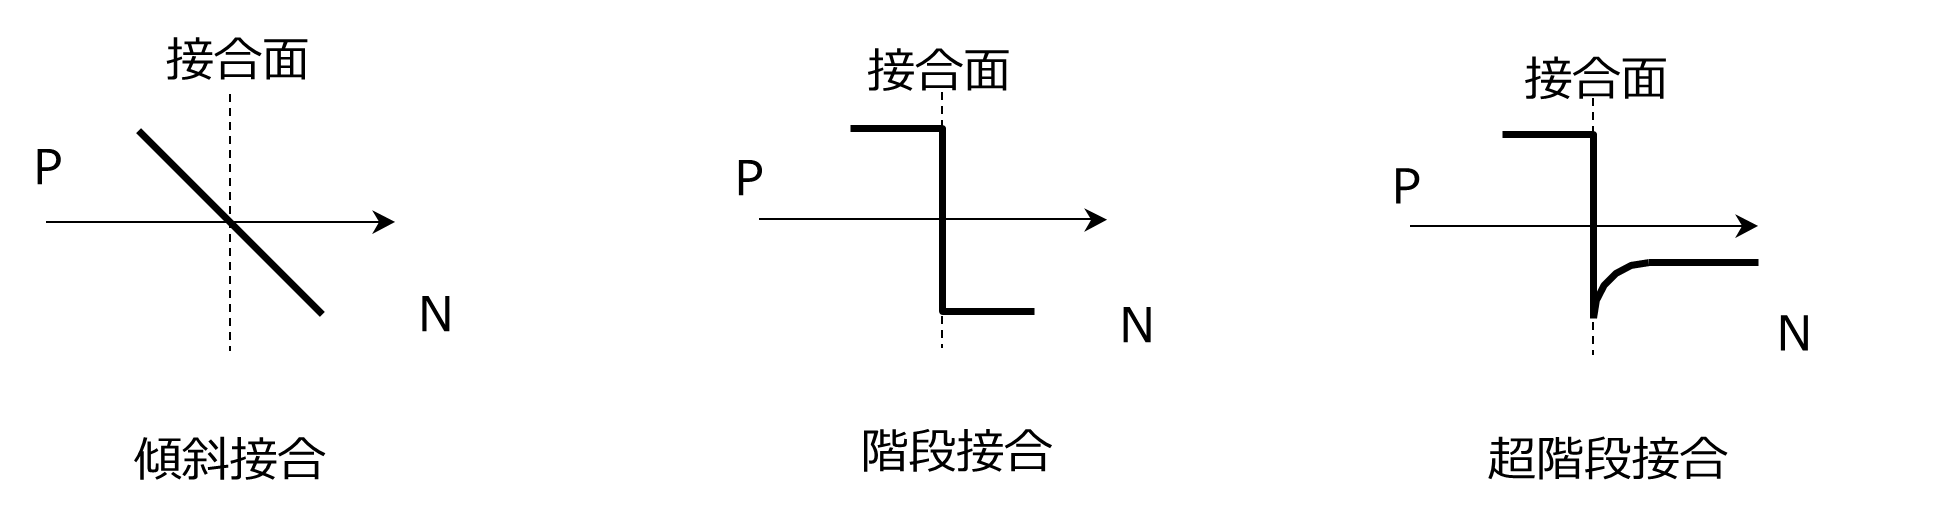 図-3　接合状態（不純物濃度分布）による分類